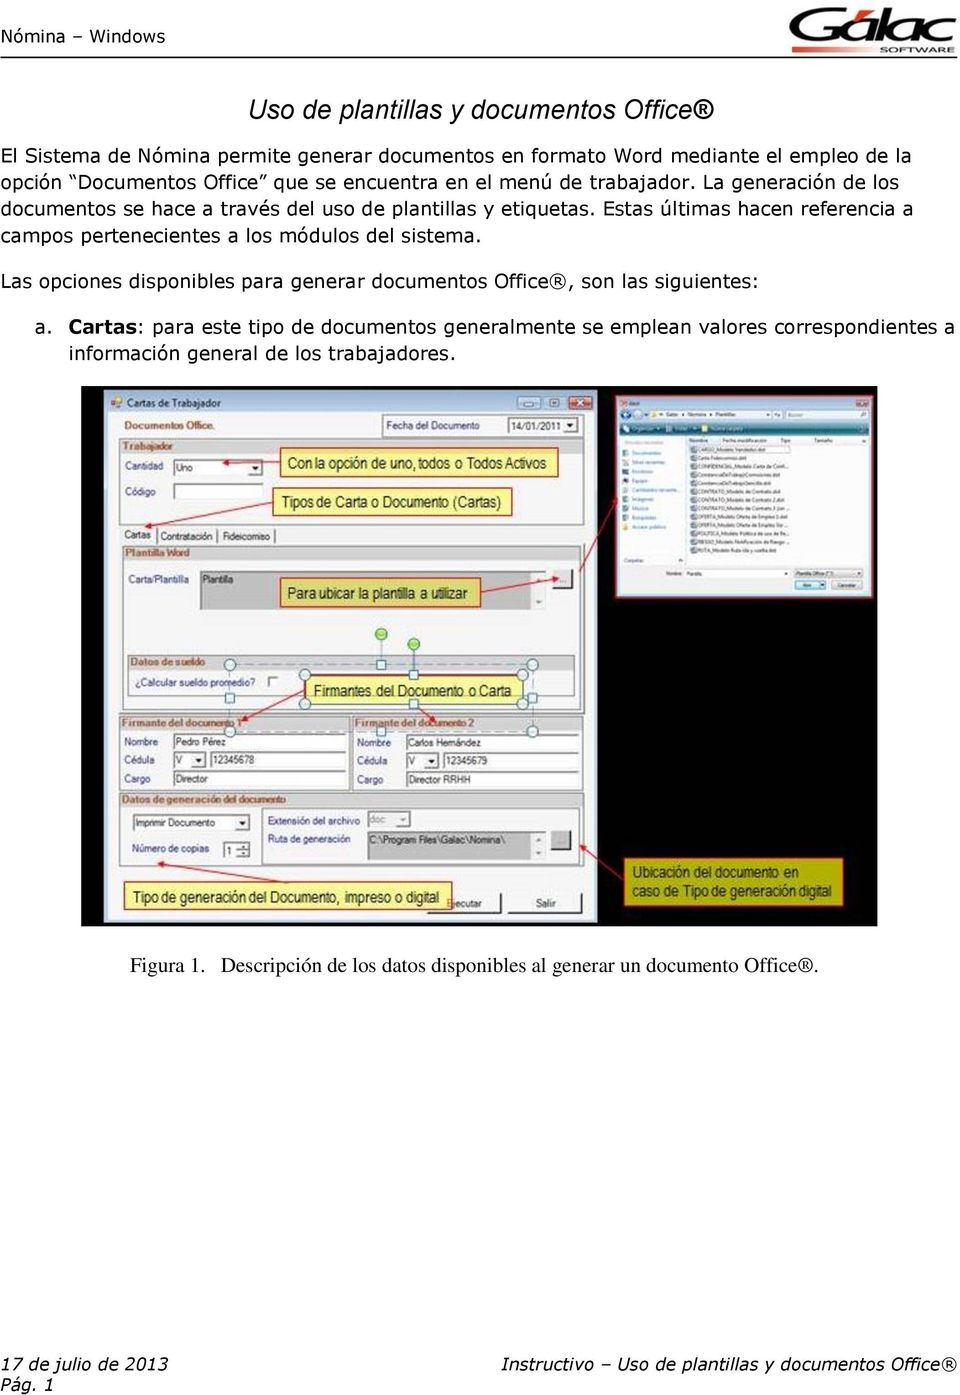 Uso de plantillas y documentos Office - PDF Descargar libre